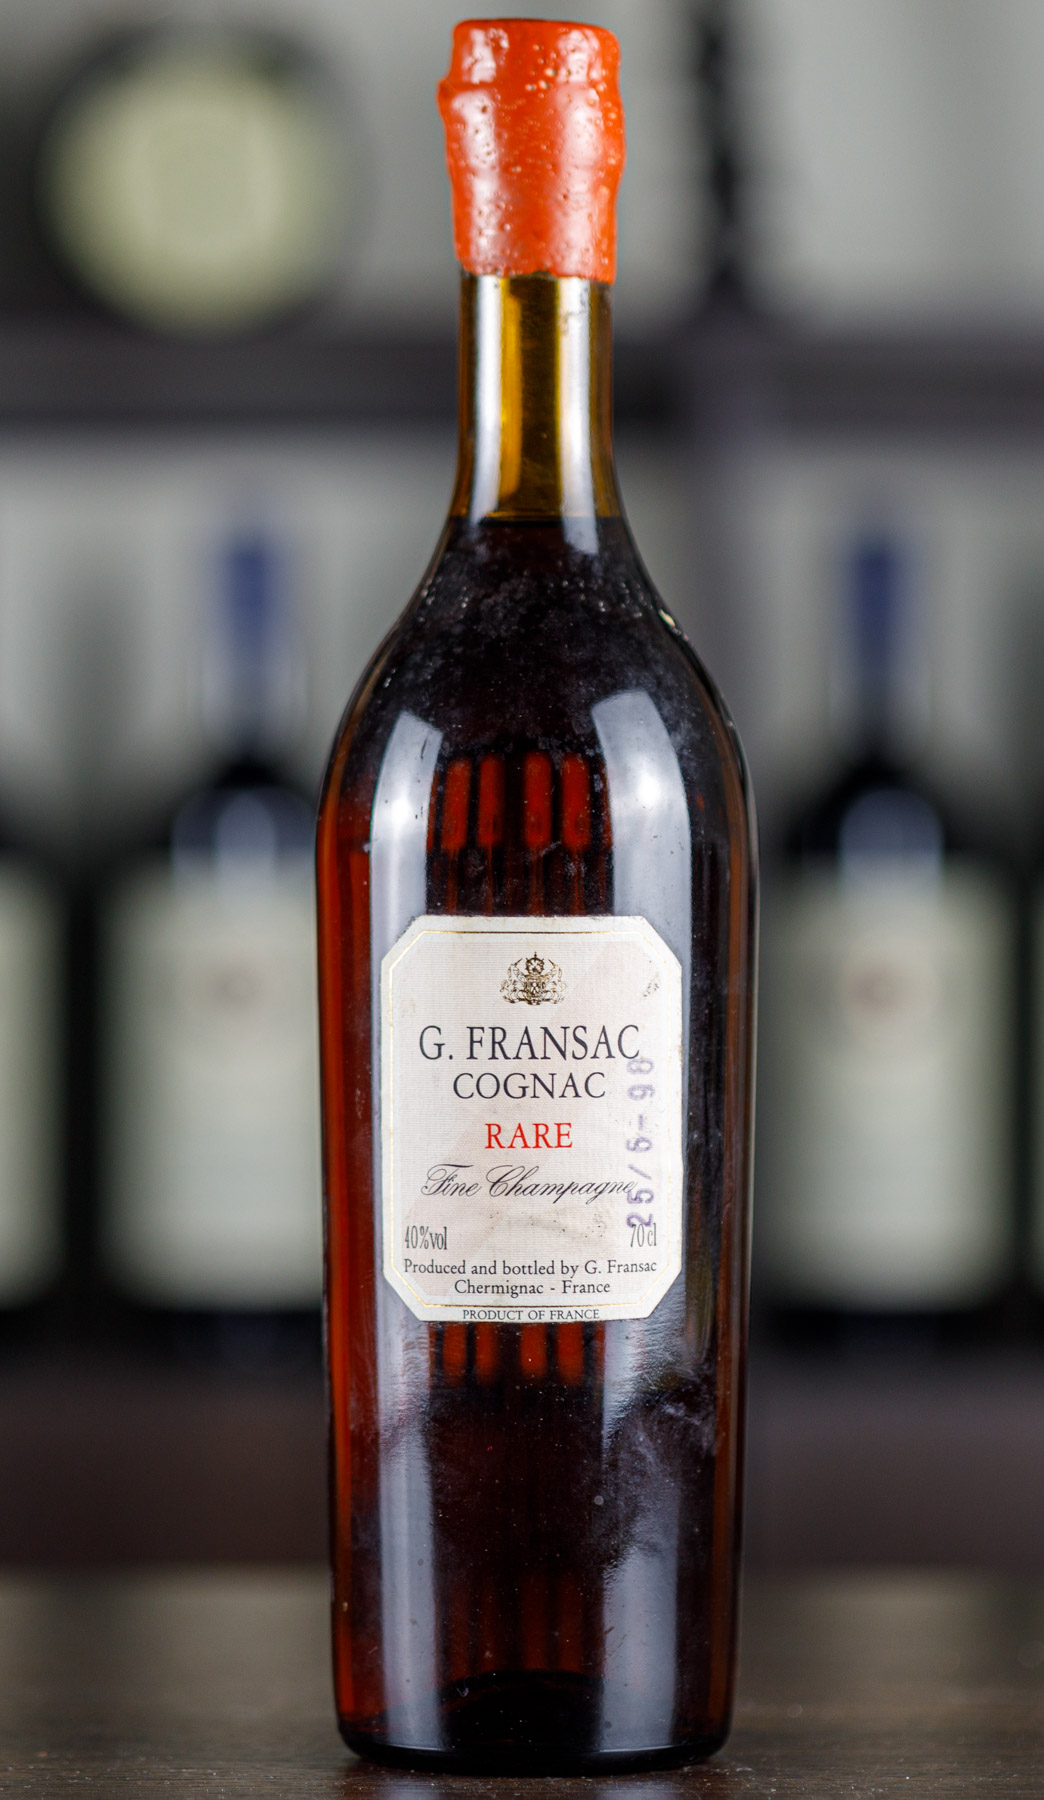 G. Fransac Cognac Rare